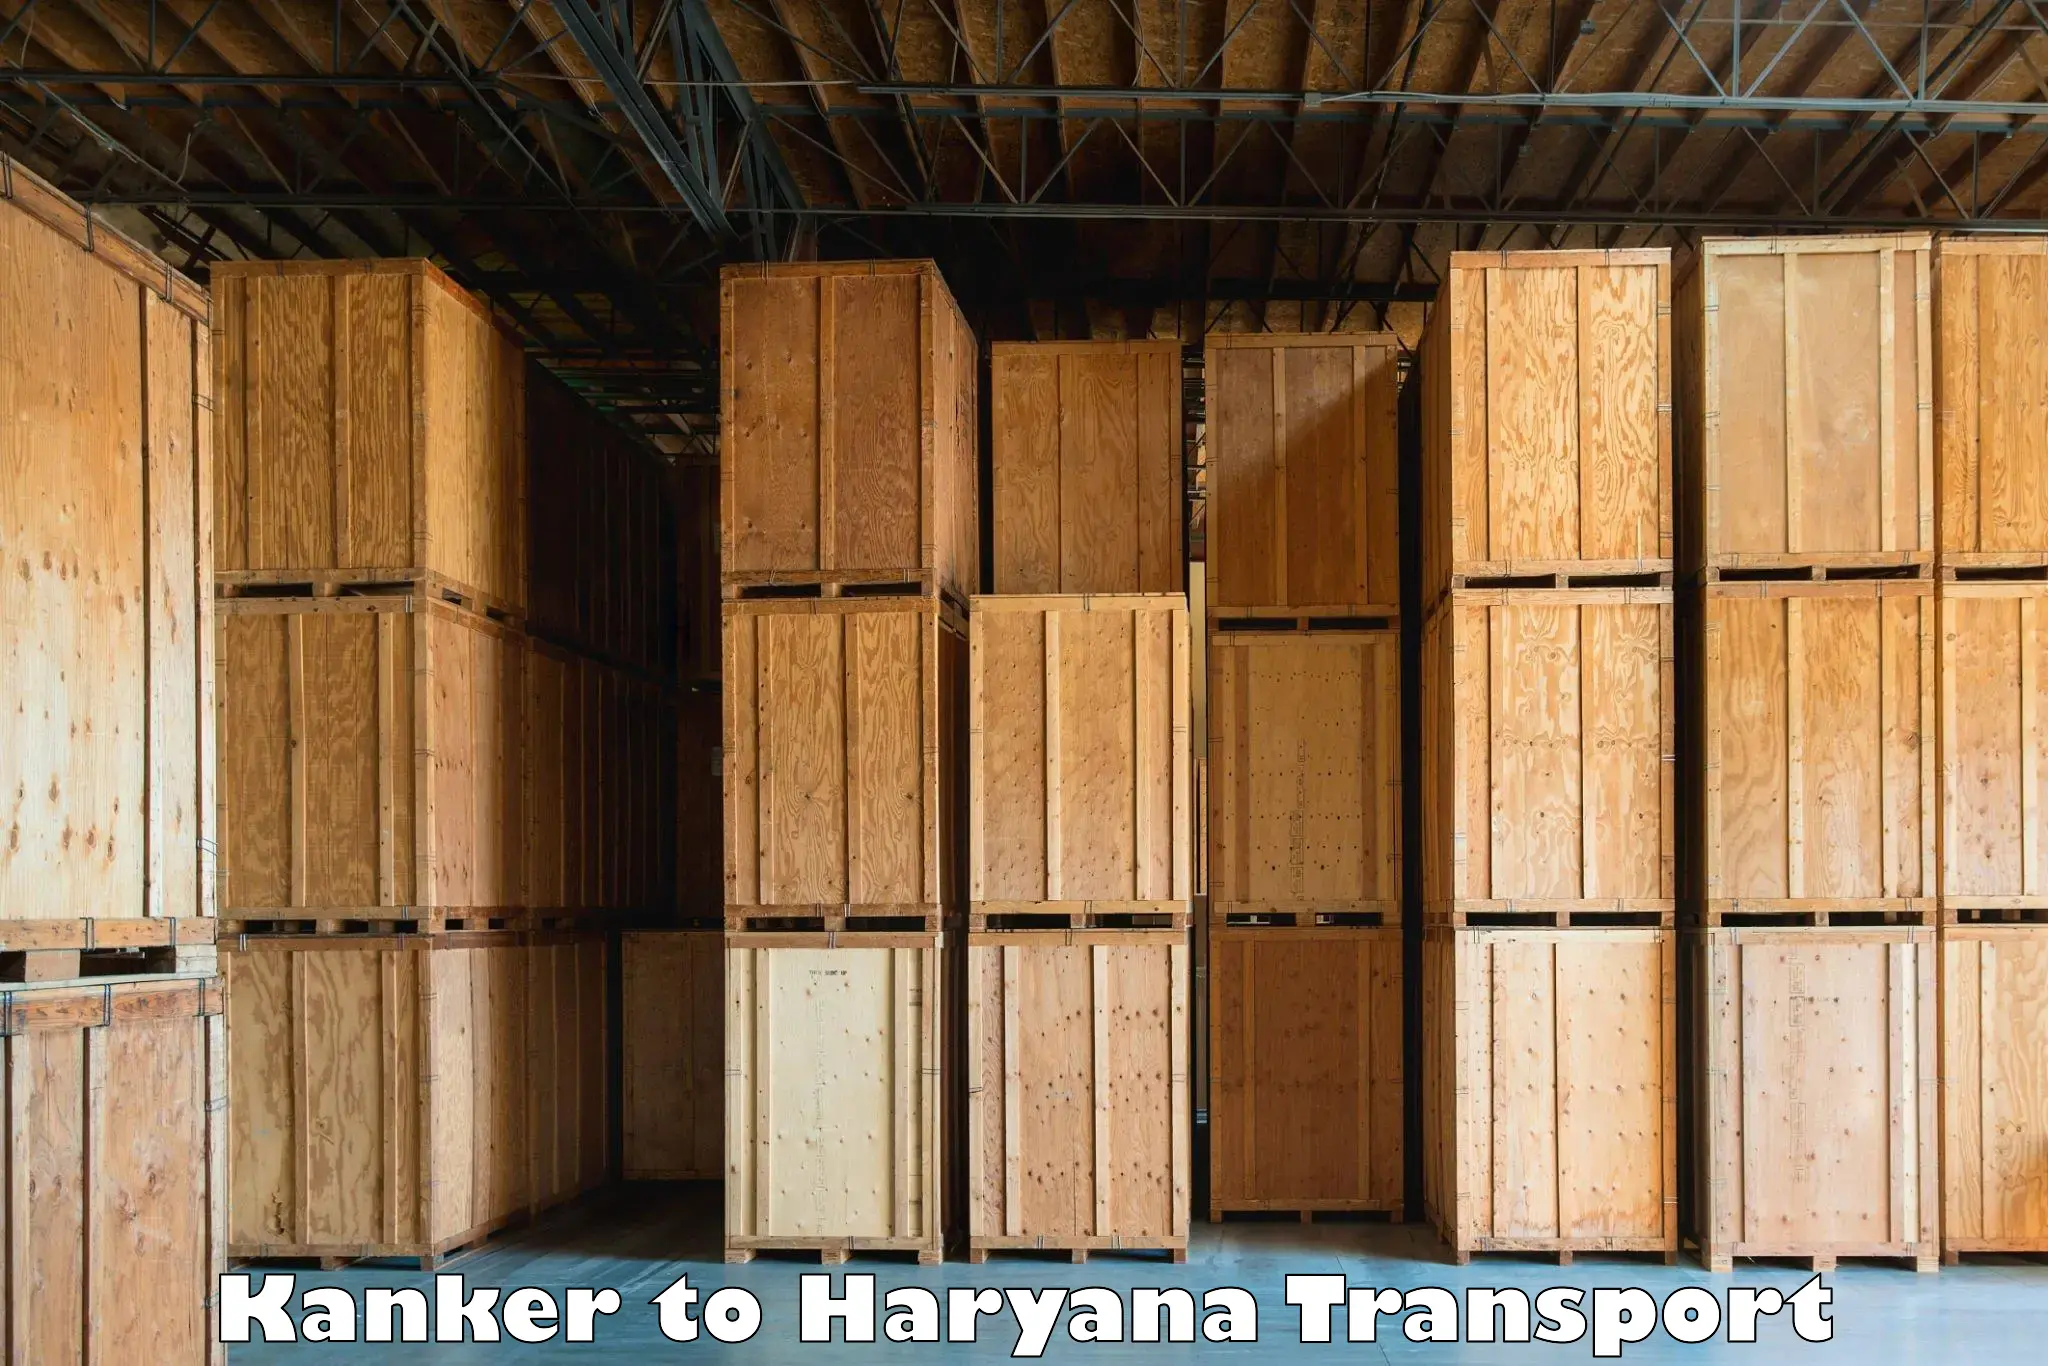 Container transport service Kanker to IIIT Sonepat